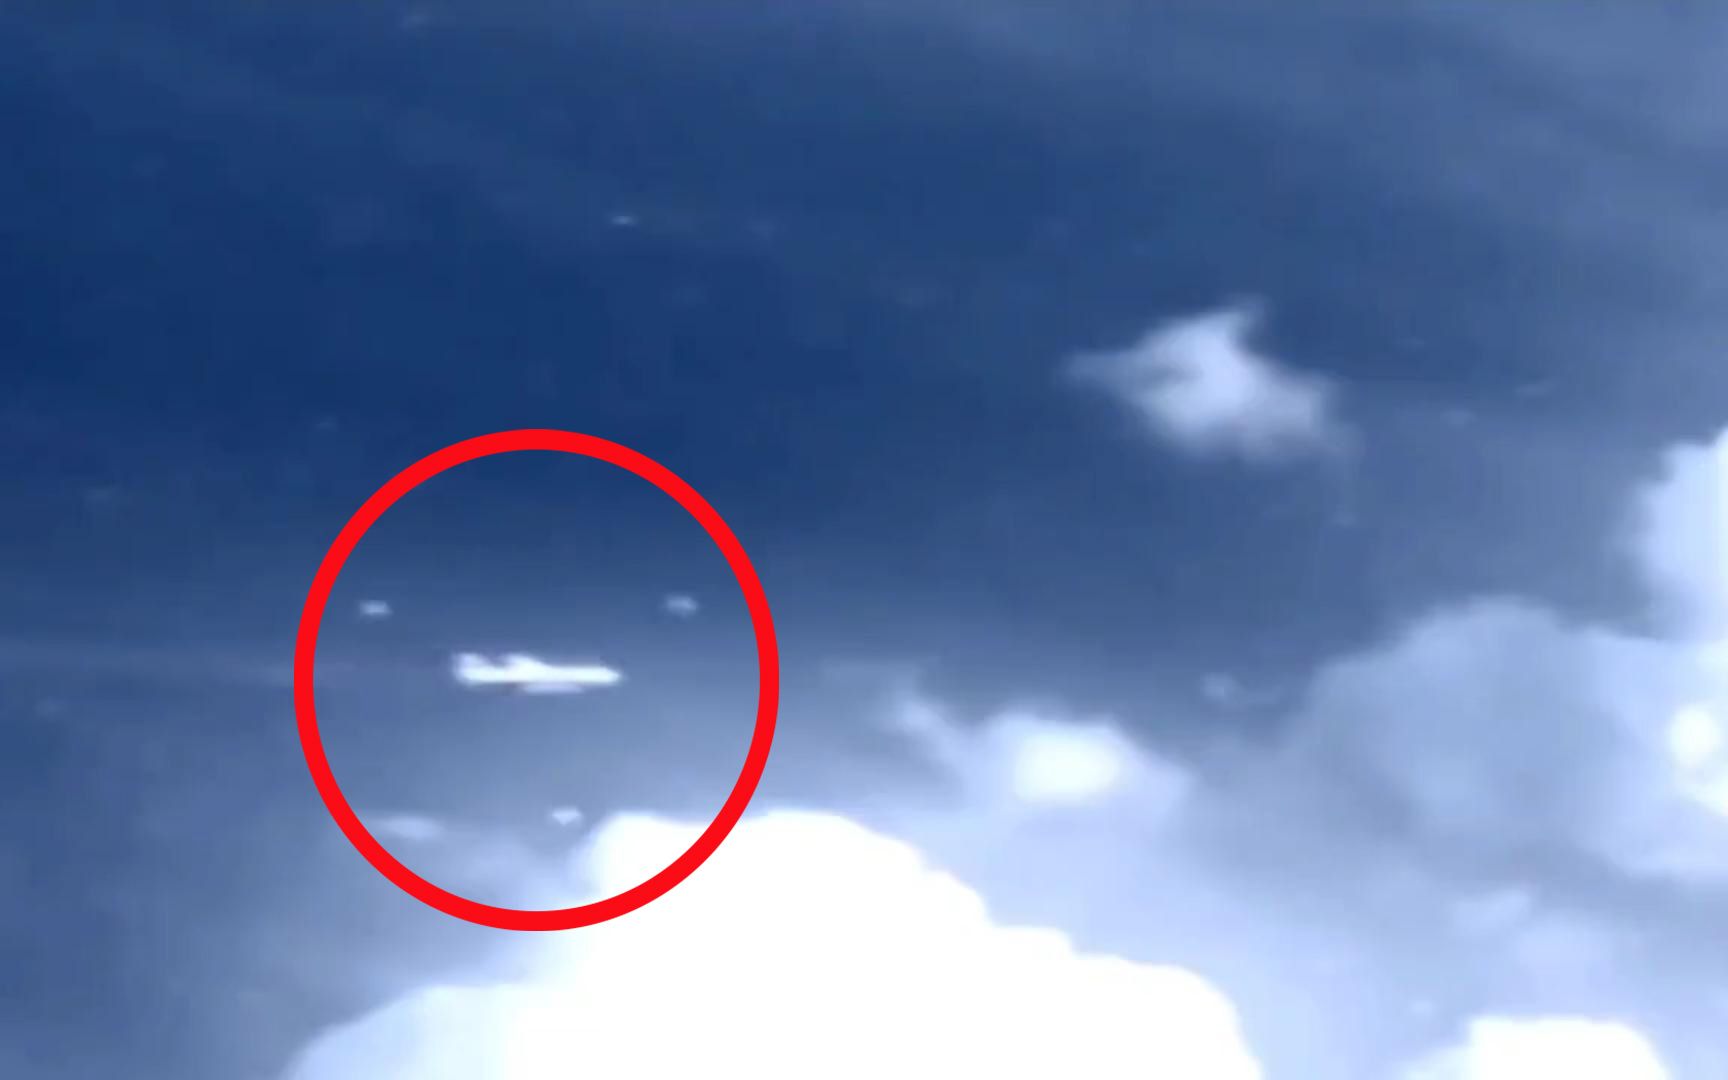 卫星拍摄到疑似马航MH370消失的视频，马来西亚皇家空军司令一句话耐人回味